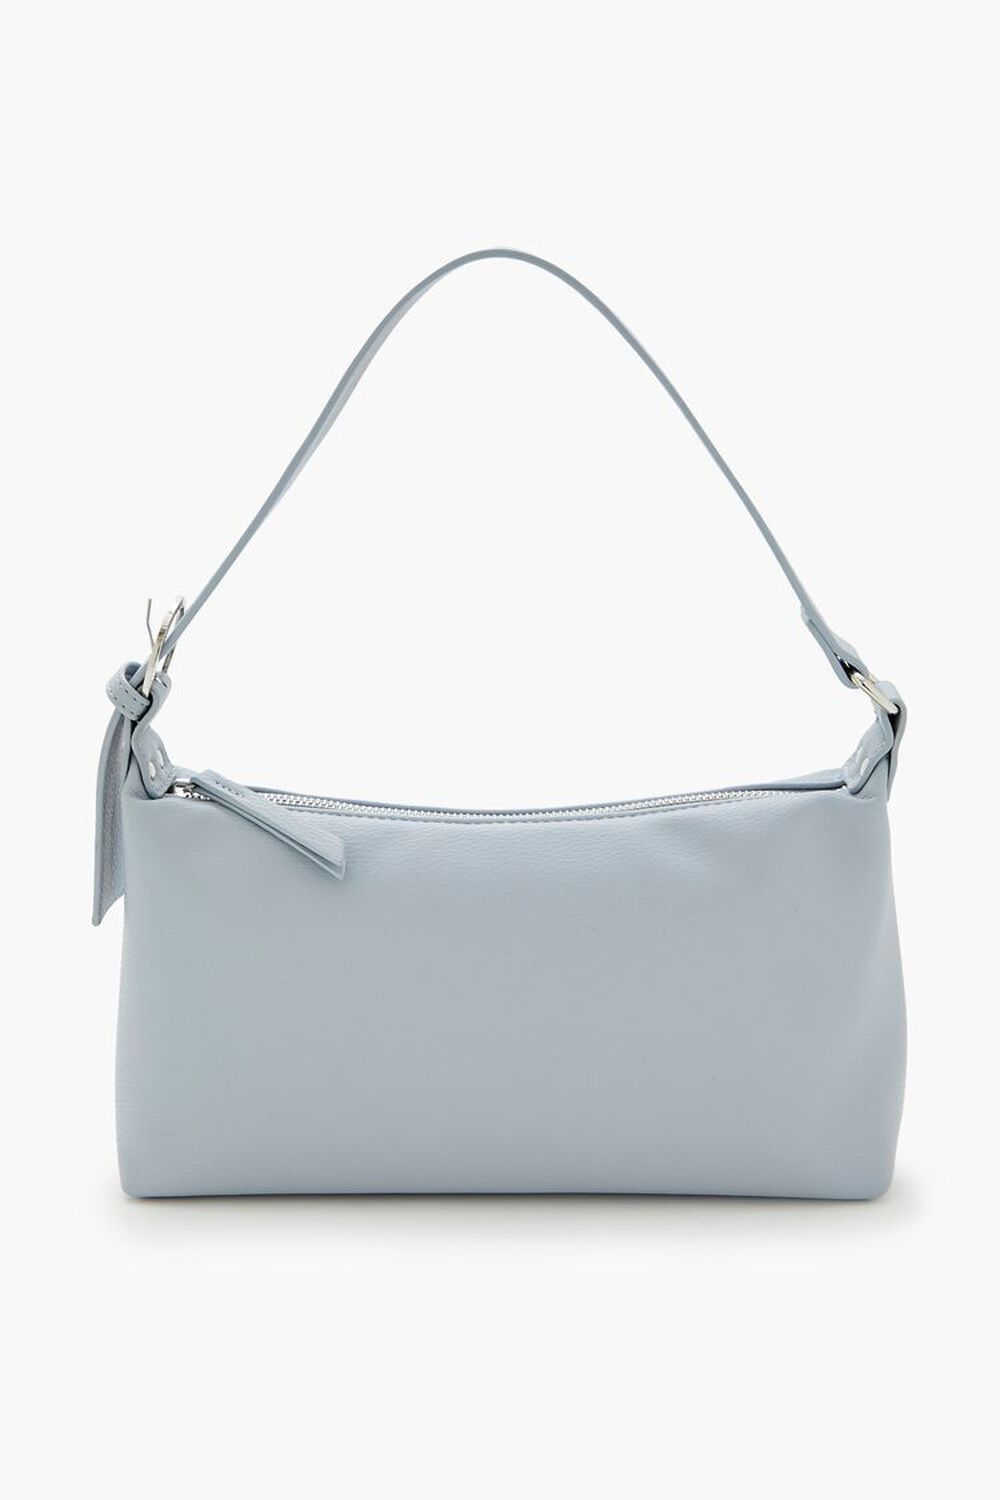 BLUE Faux Leather Shoulder Bag, image 2